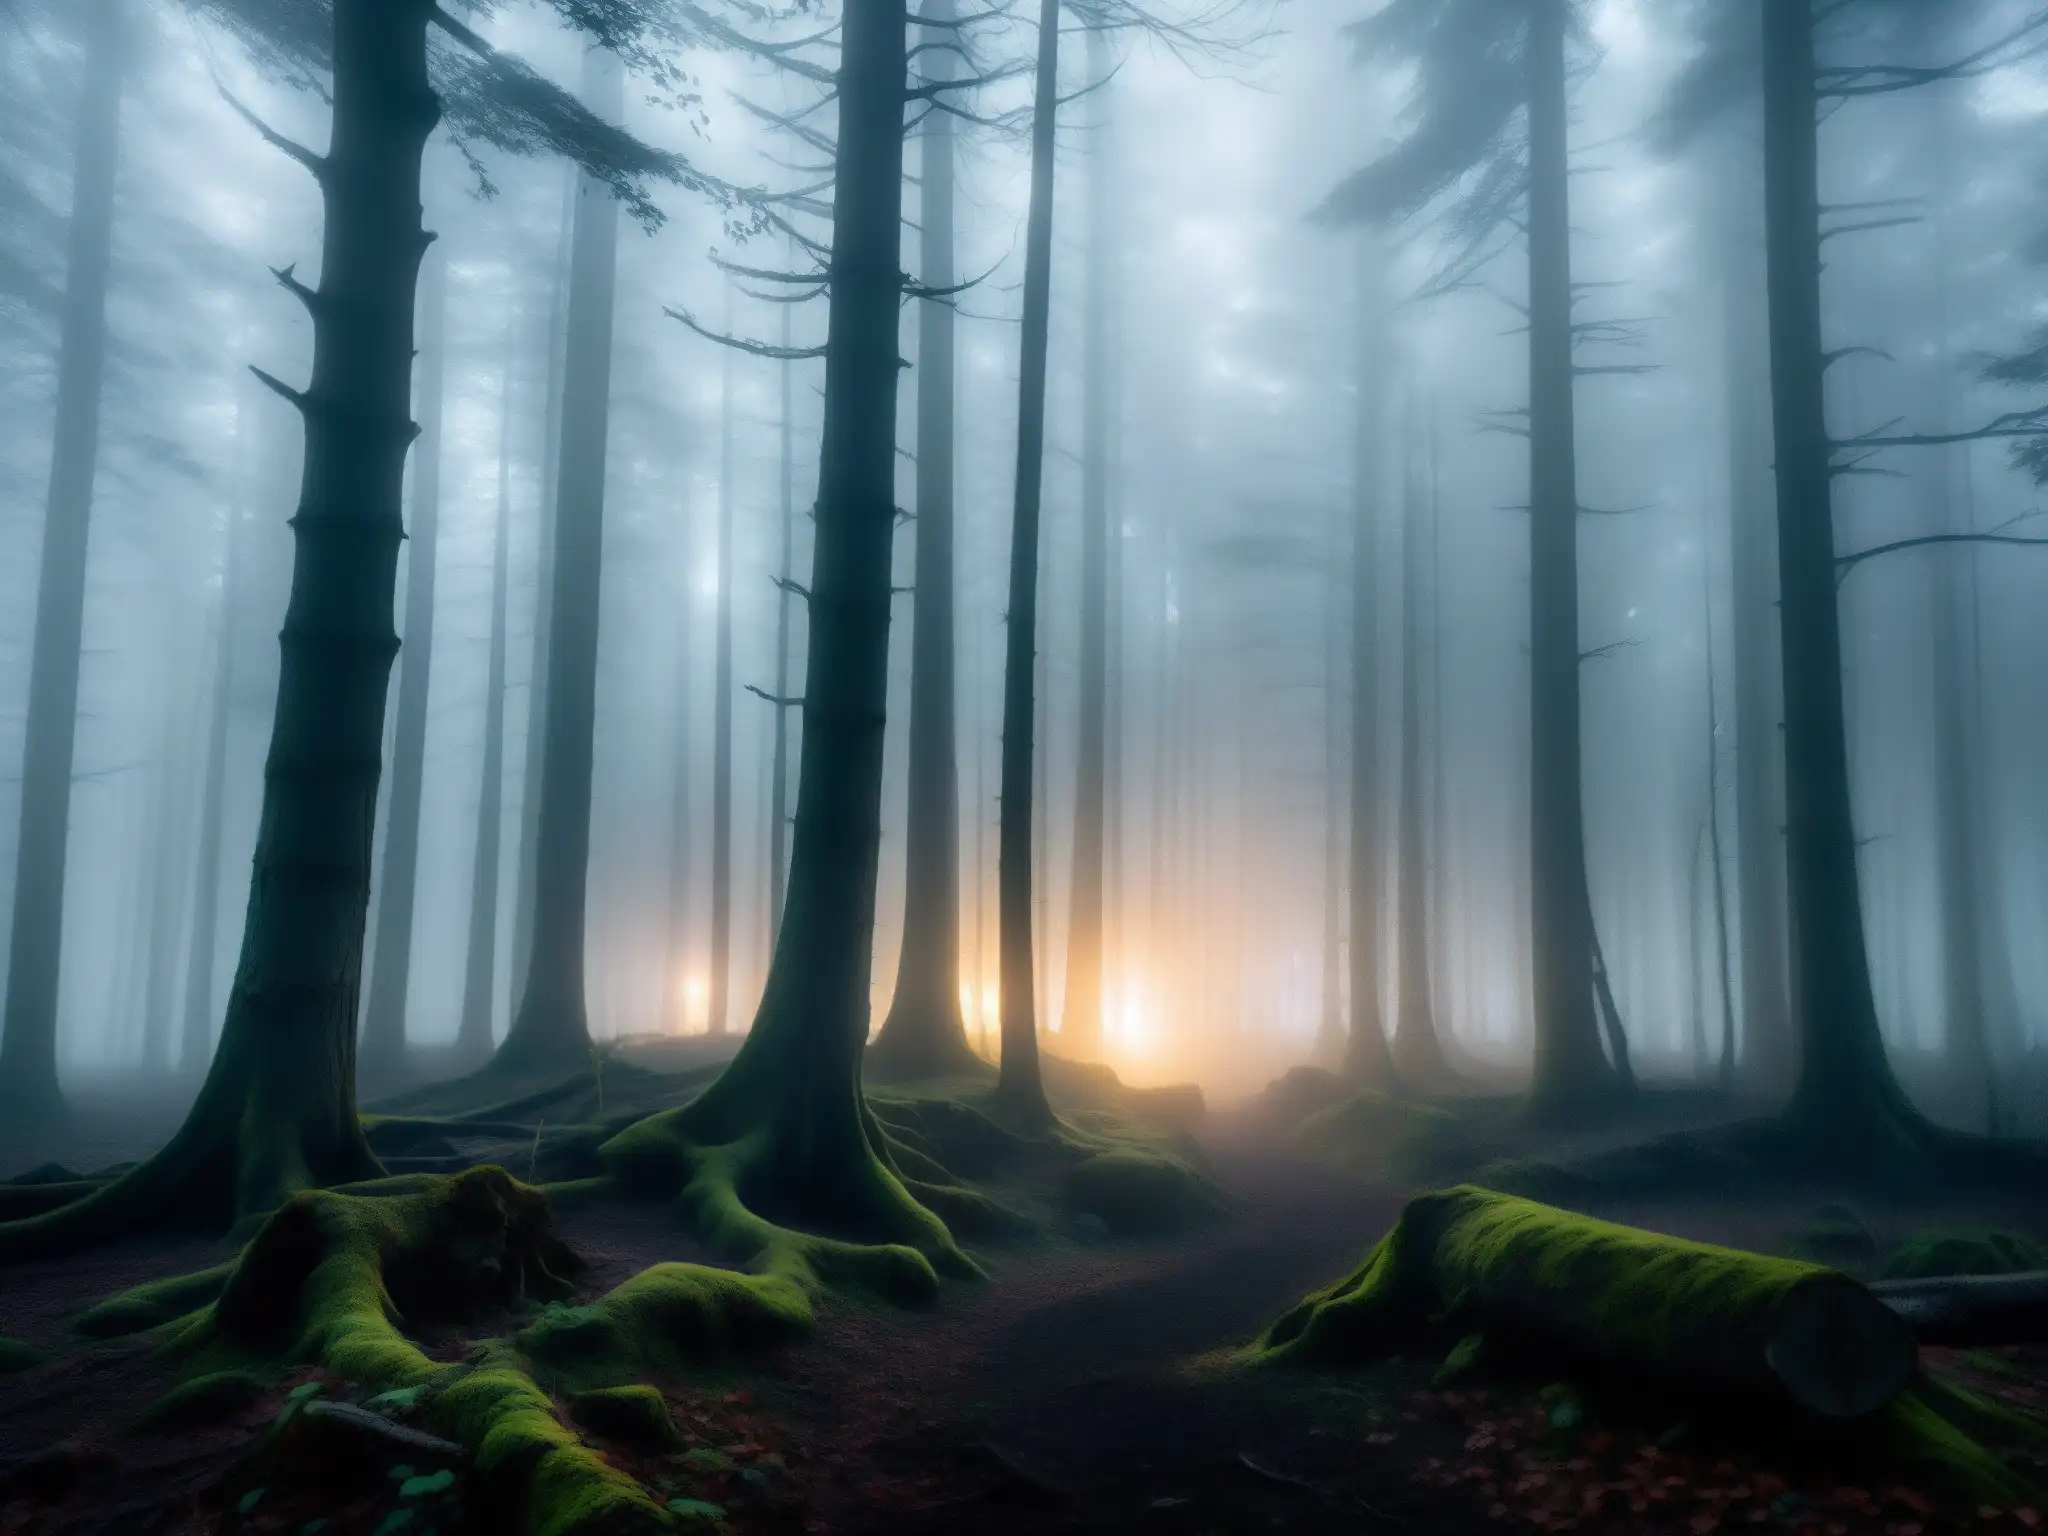 Un bosque oscuro y brumoso con árboles retorcidos y una sensación de inquietud